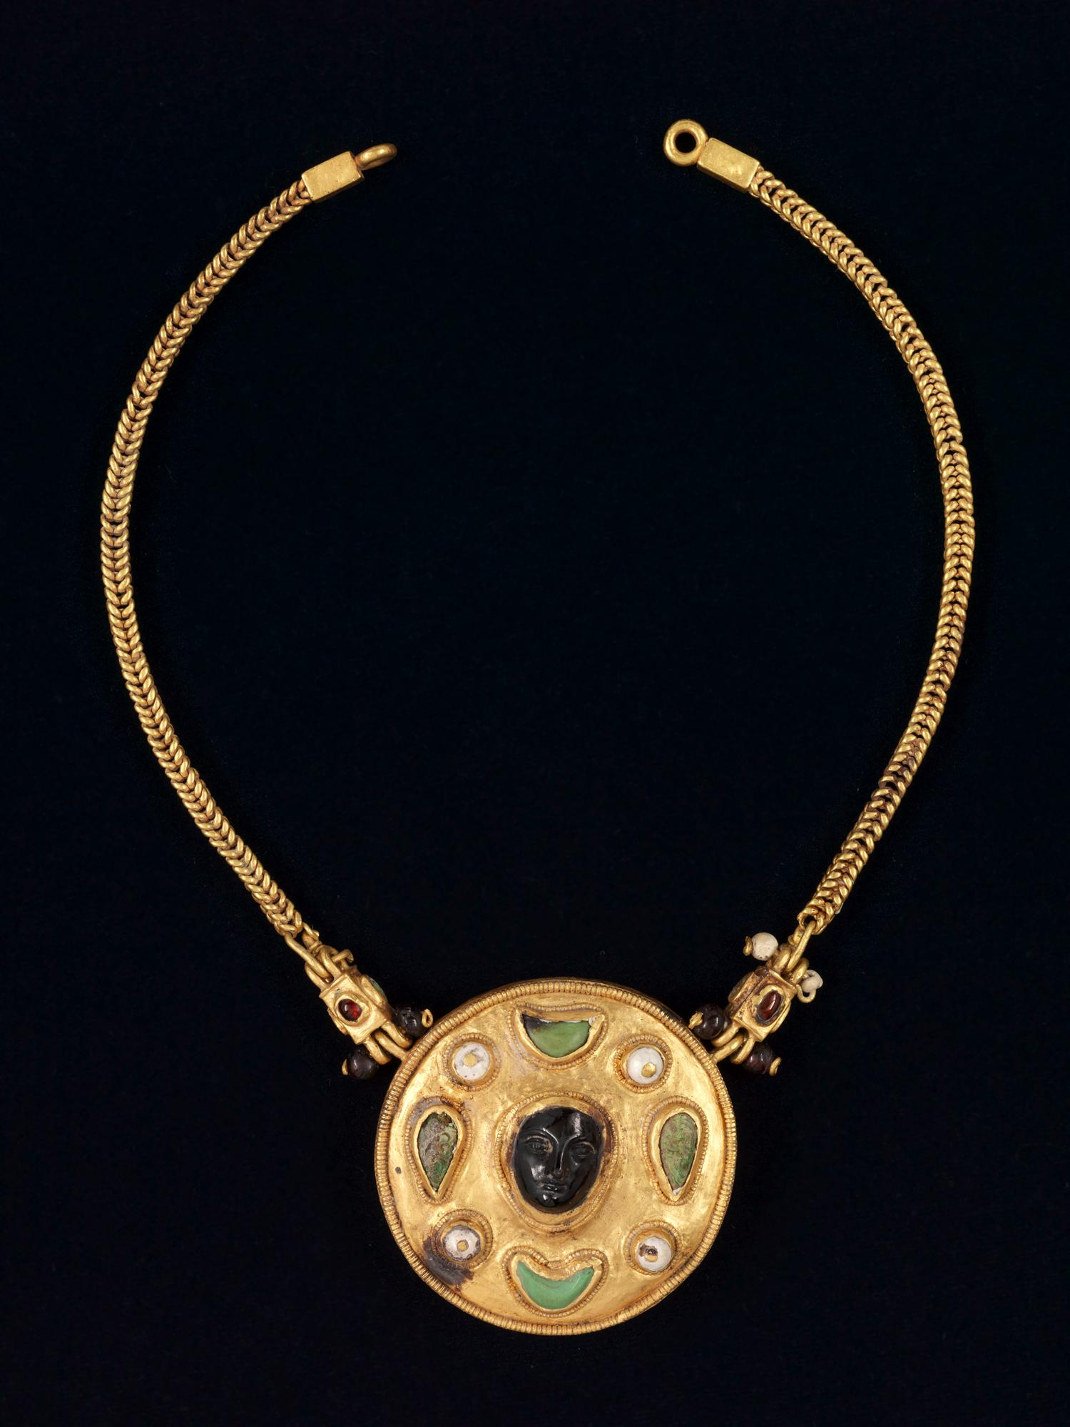 Περιδέραιο με καμέο. Από τη Θατζ, Τελλ αλ-Ζάιερ. 1ος αιώνας μ.Χ. Χρυσός, μαργαριτάρια, τουρκουάζ και ρουμπίνια. Εθνικό Μουσείο, Ριάντ